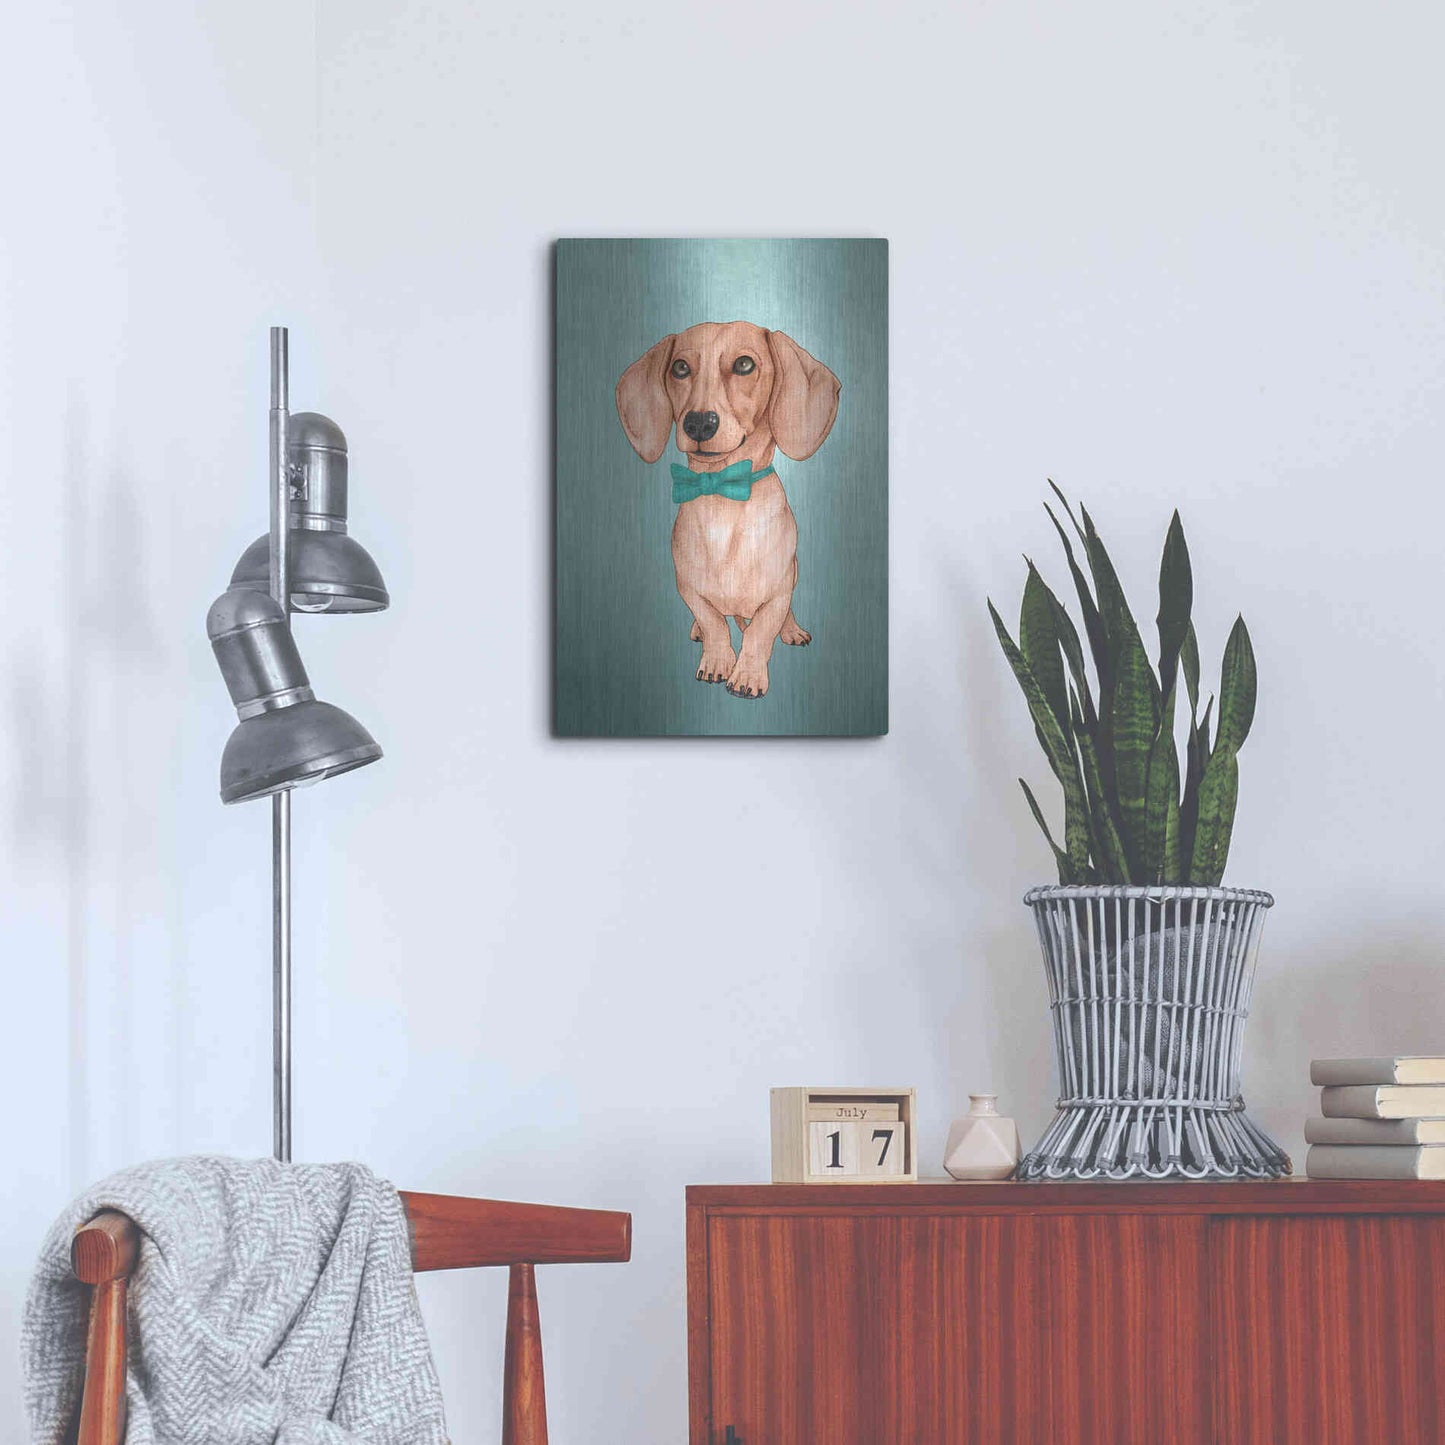 Luxe Metal Art 'The Wiener Dog' by Barruf Metal Wall Art,16x24